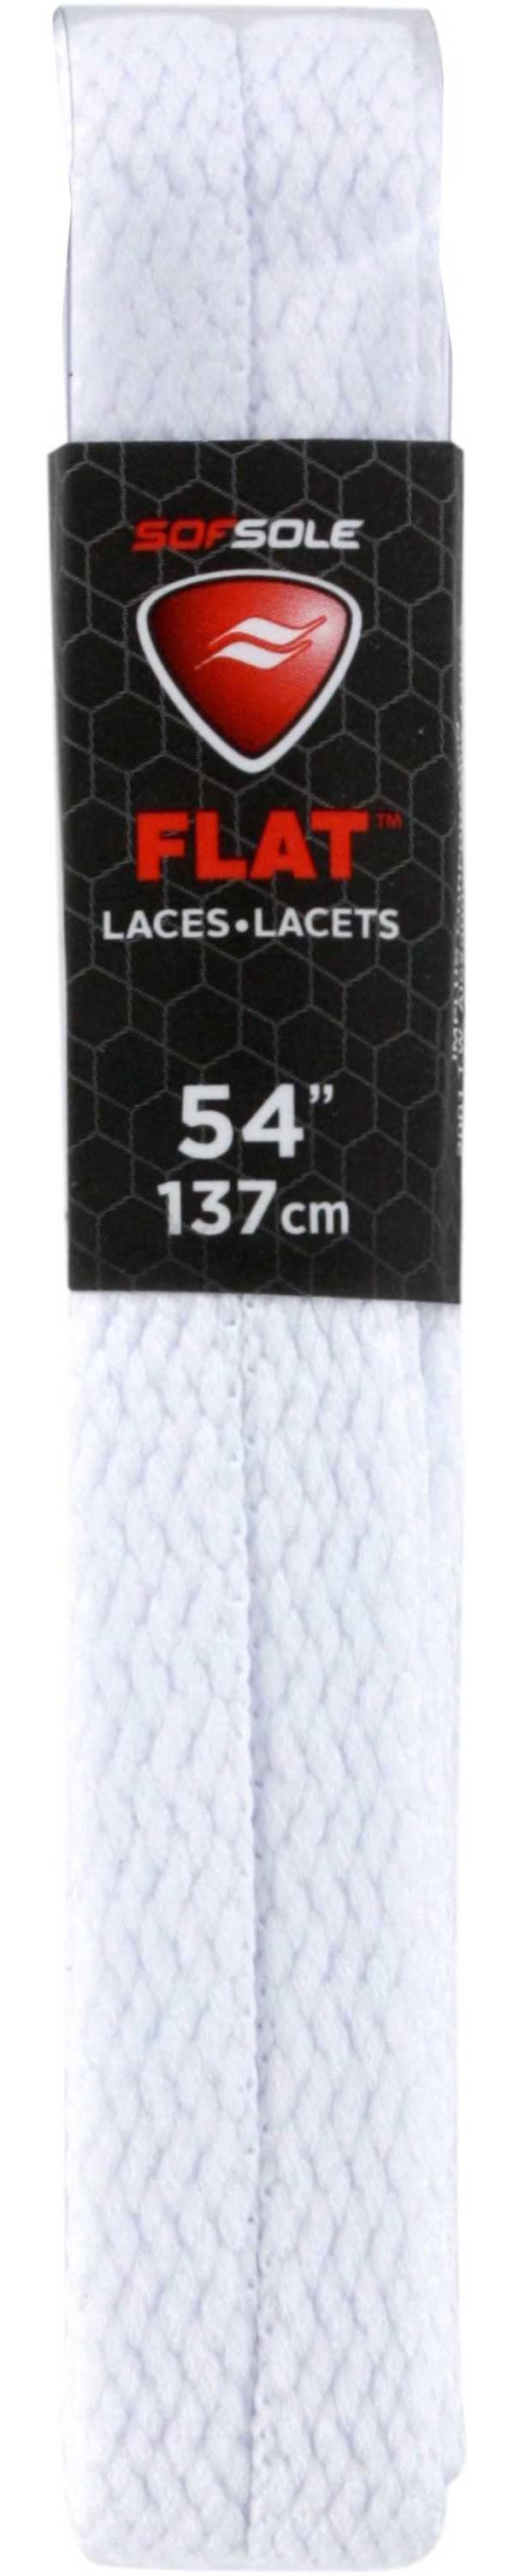 Black Athletic Laces Sof Sole 54” Shoe Laces Lot Of 6 Pair Flat 